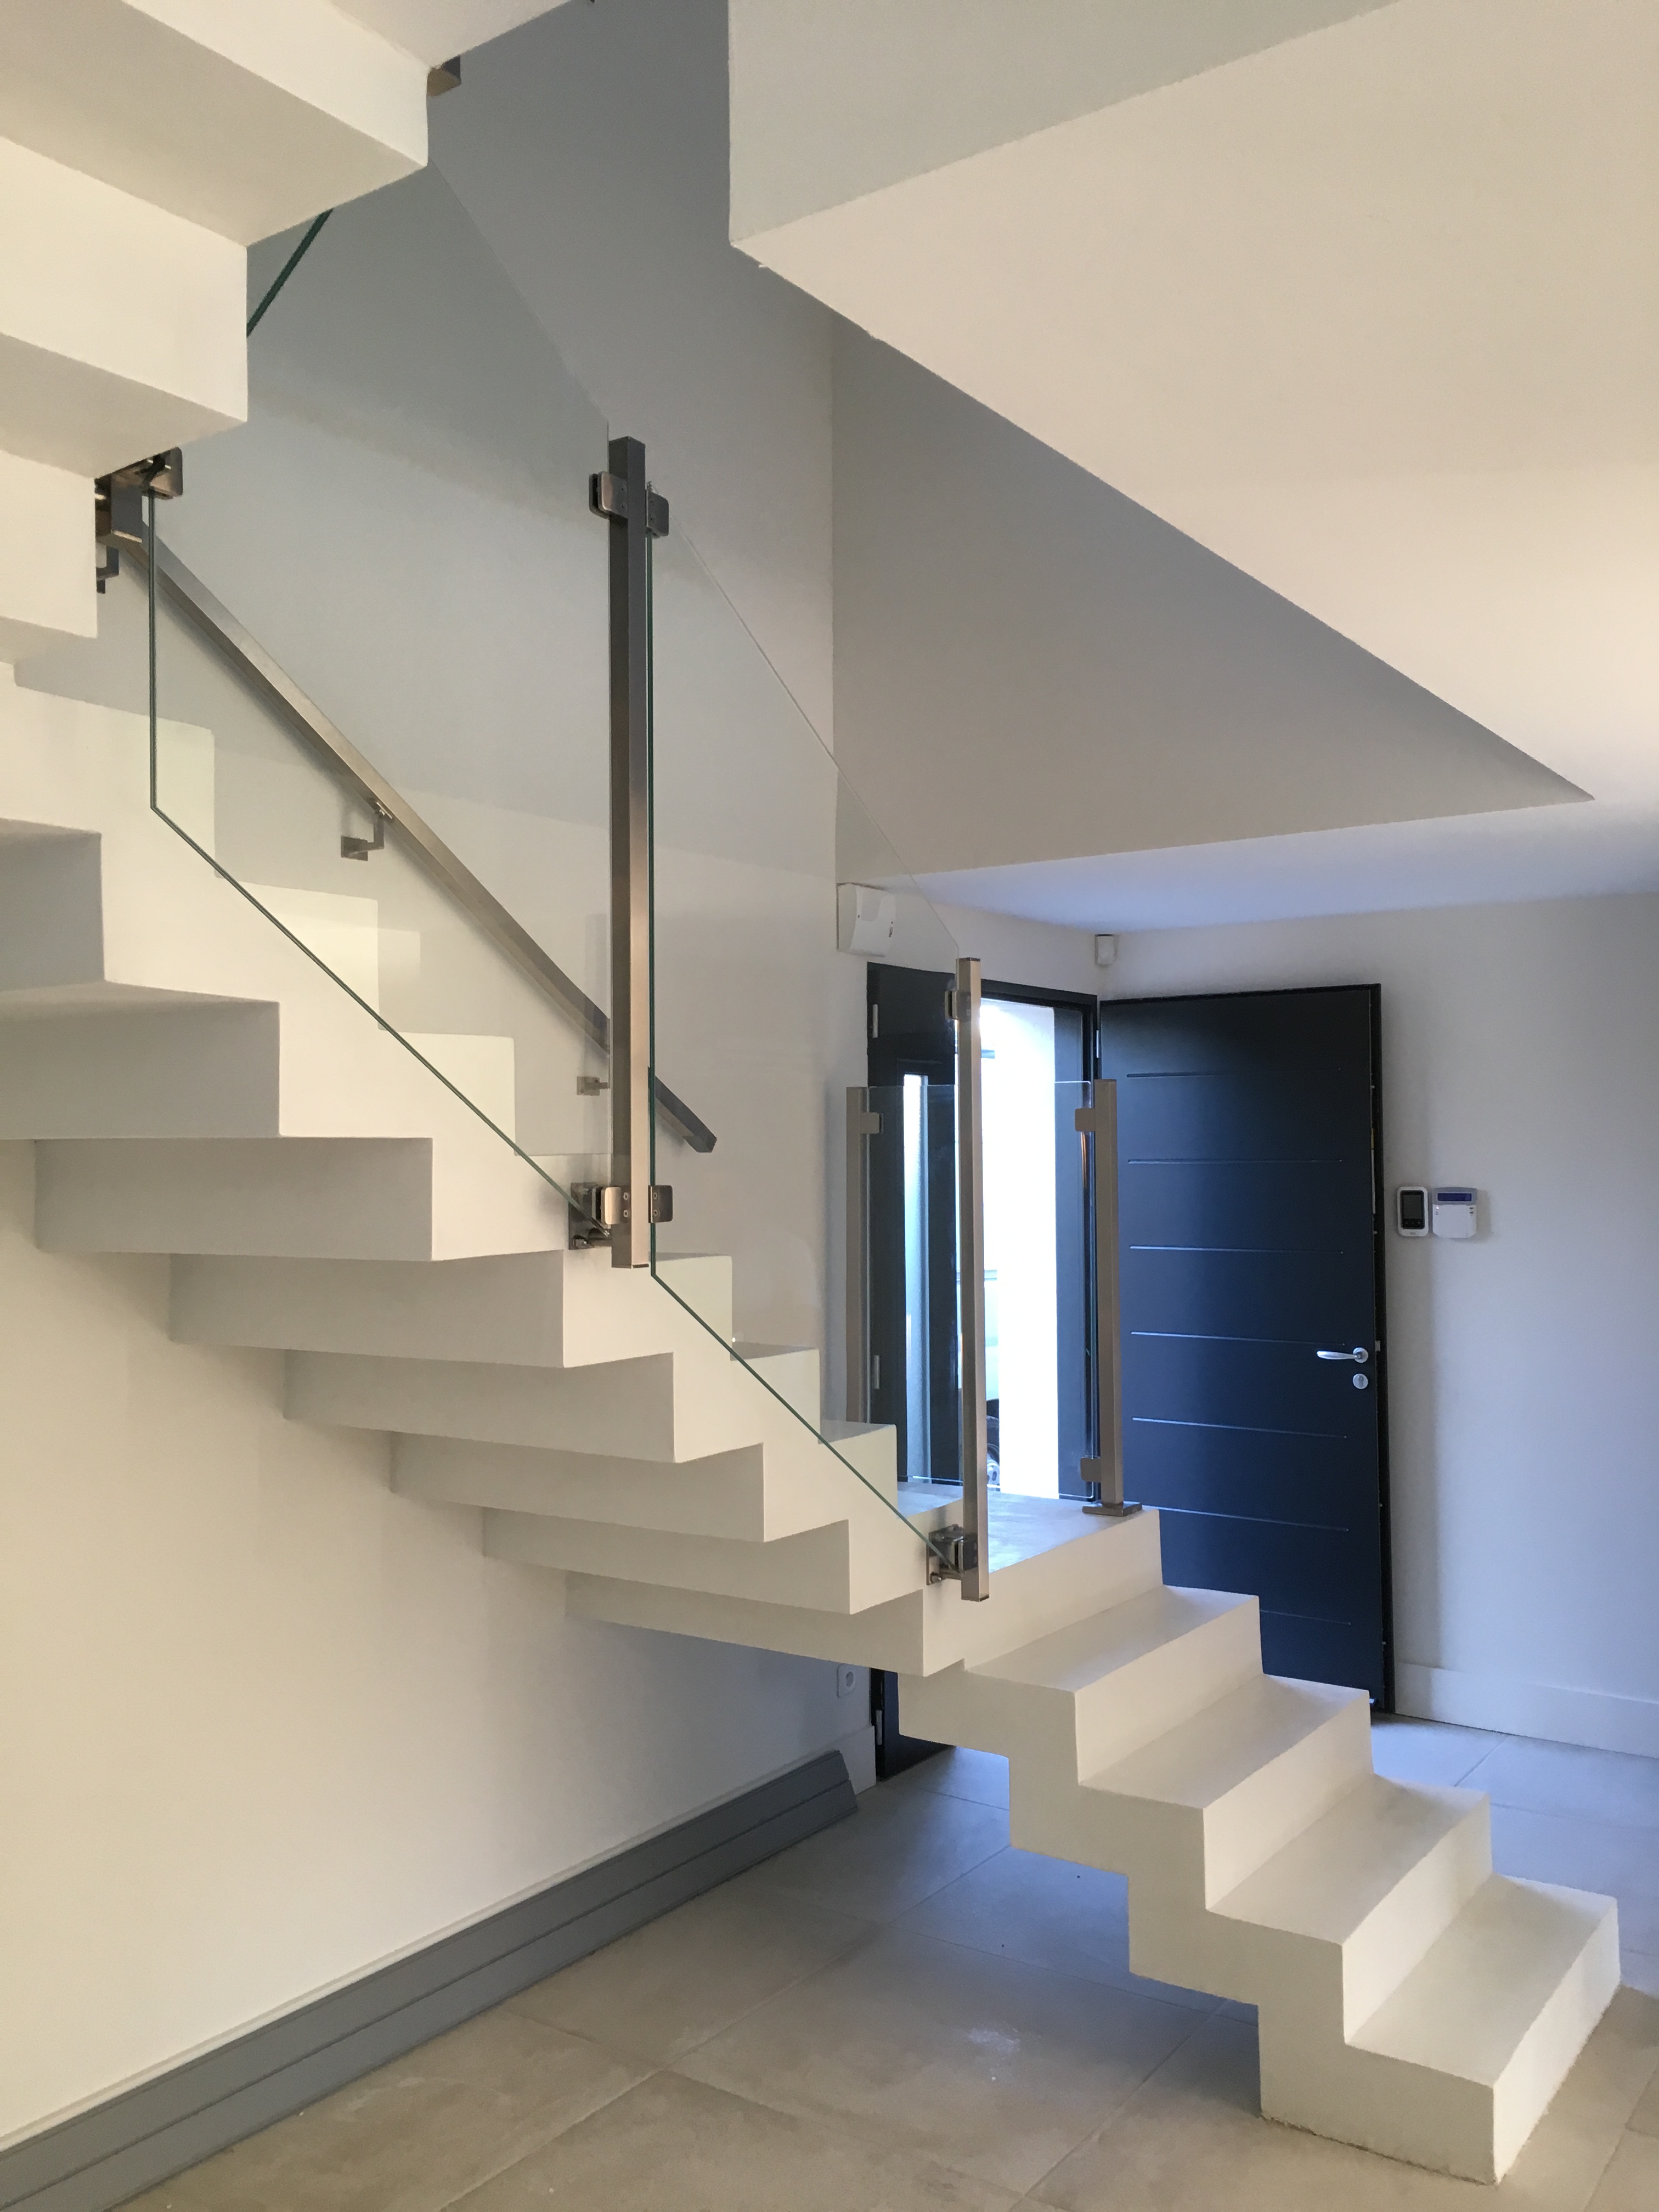 somptueux escalier crémaillère avec palier intermédiaire en béton ciré vernis mat couleur everest Blanc pur à Aix en Provence pour un particulier